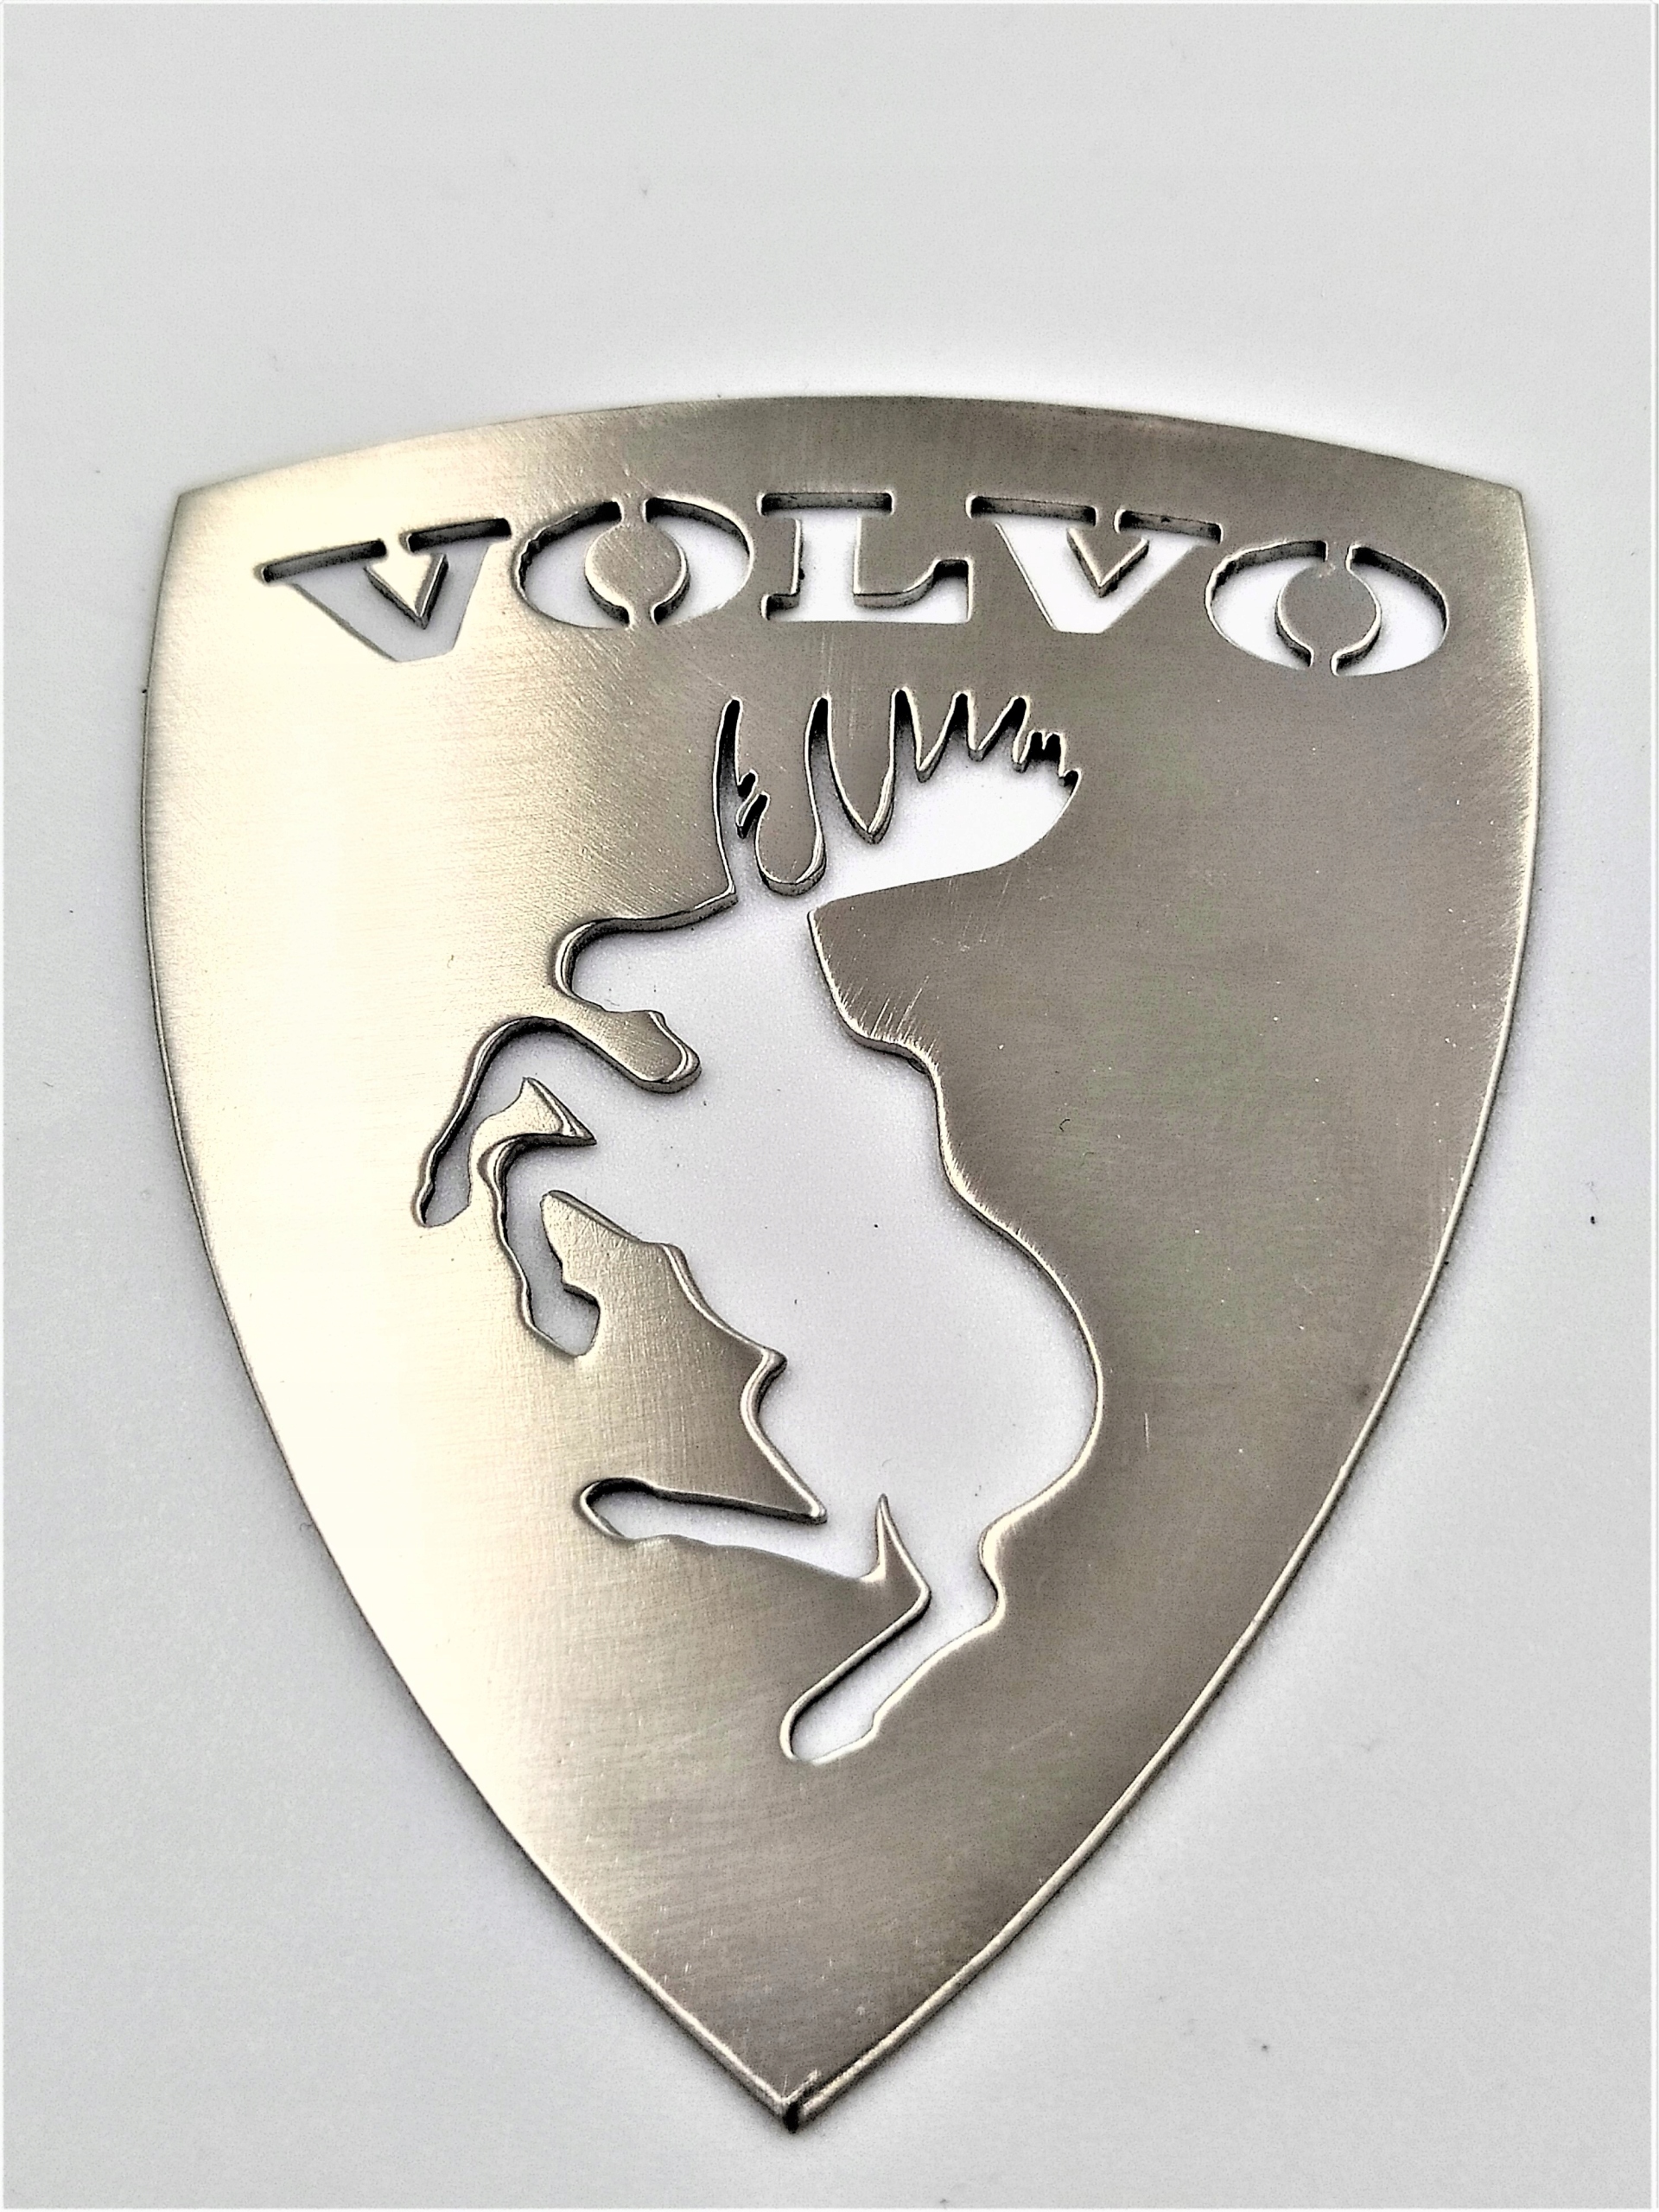 Вольво лось. Эмблема Лось Volvo. Значок Вольво с лосем. Герб Вольво. Шильдик Вольво Лось.